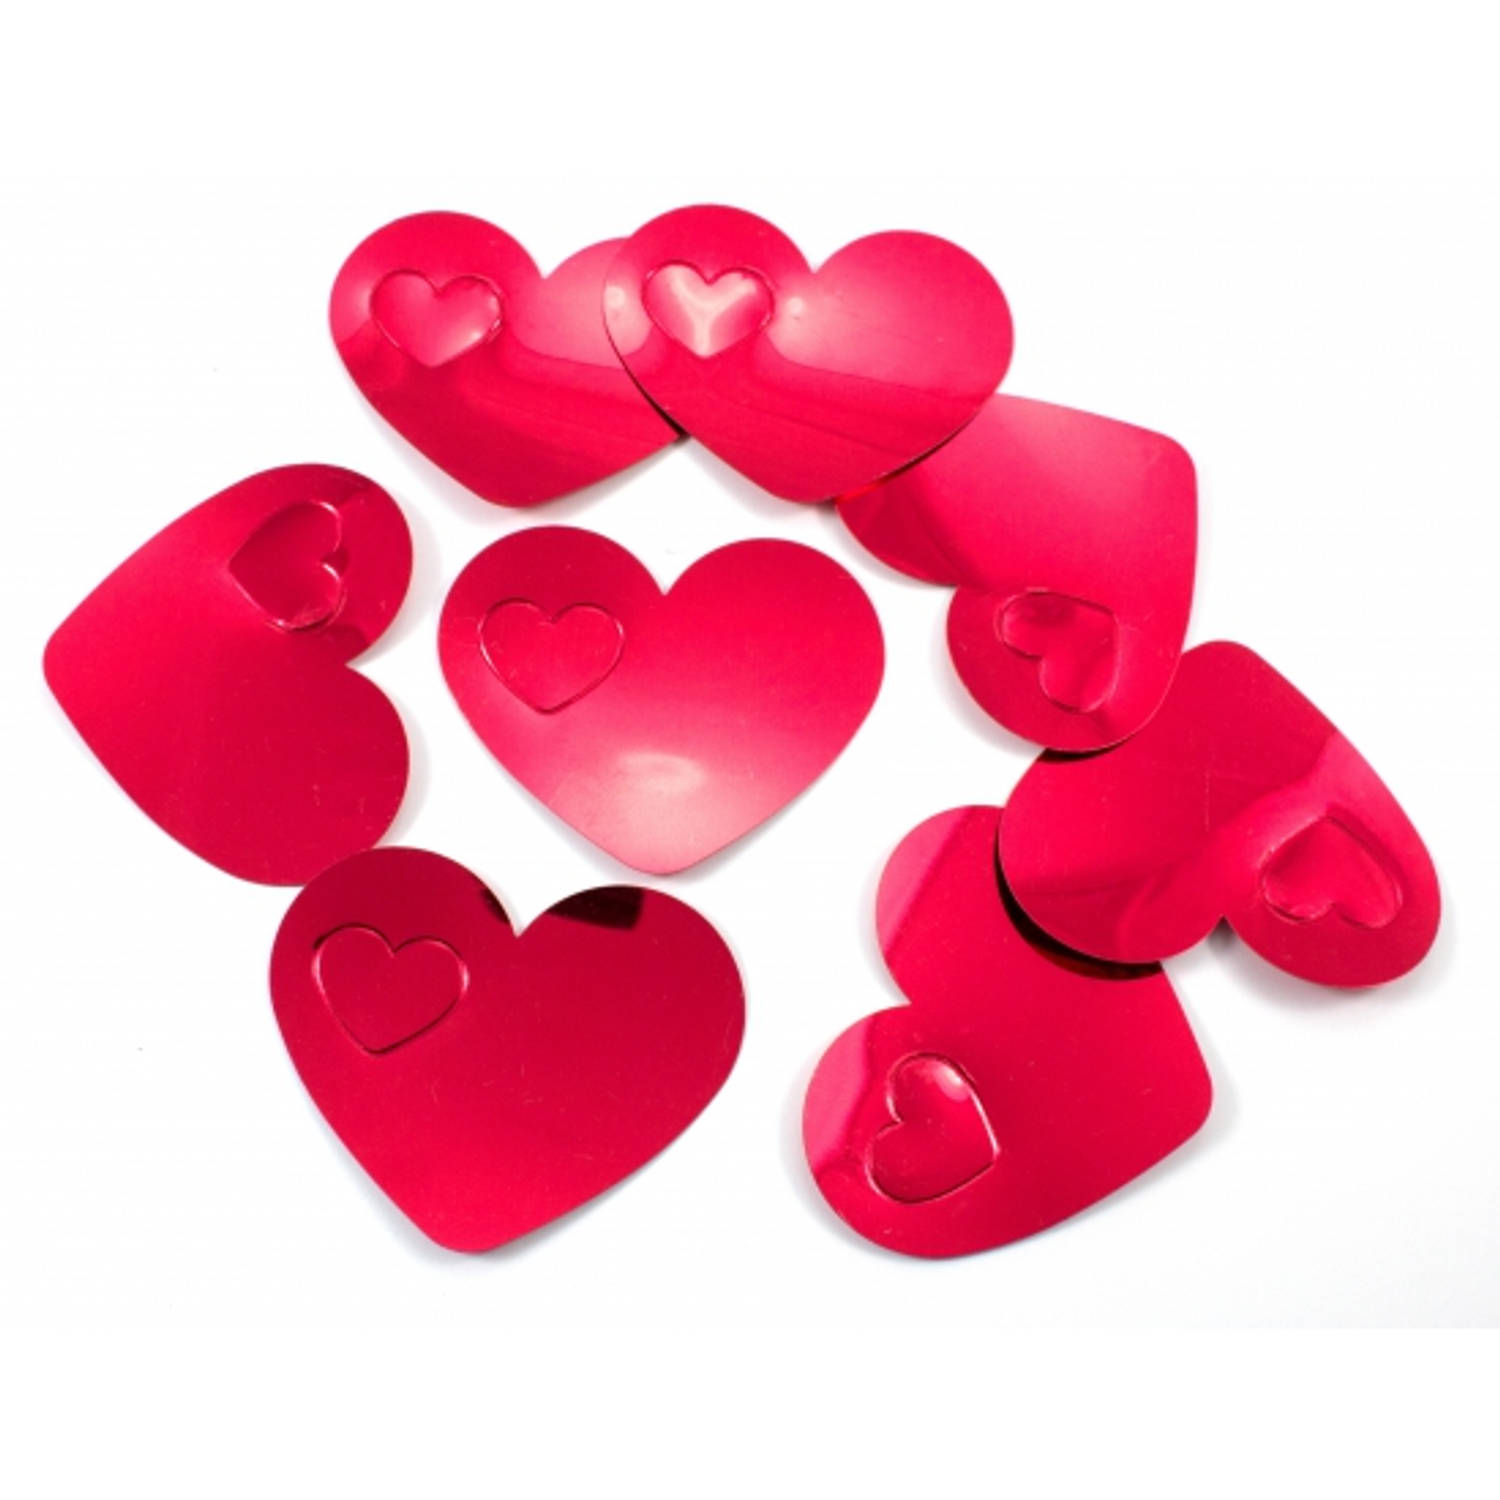 10x mega confetti rode hartjes - Valentijn / Bruiloft confetti